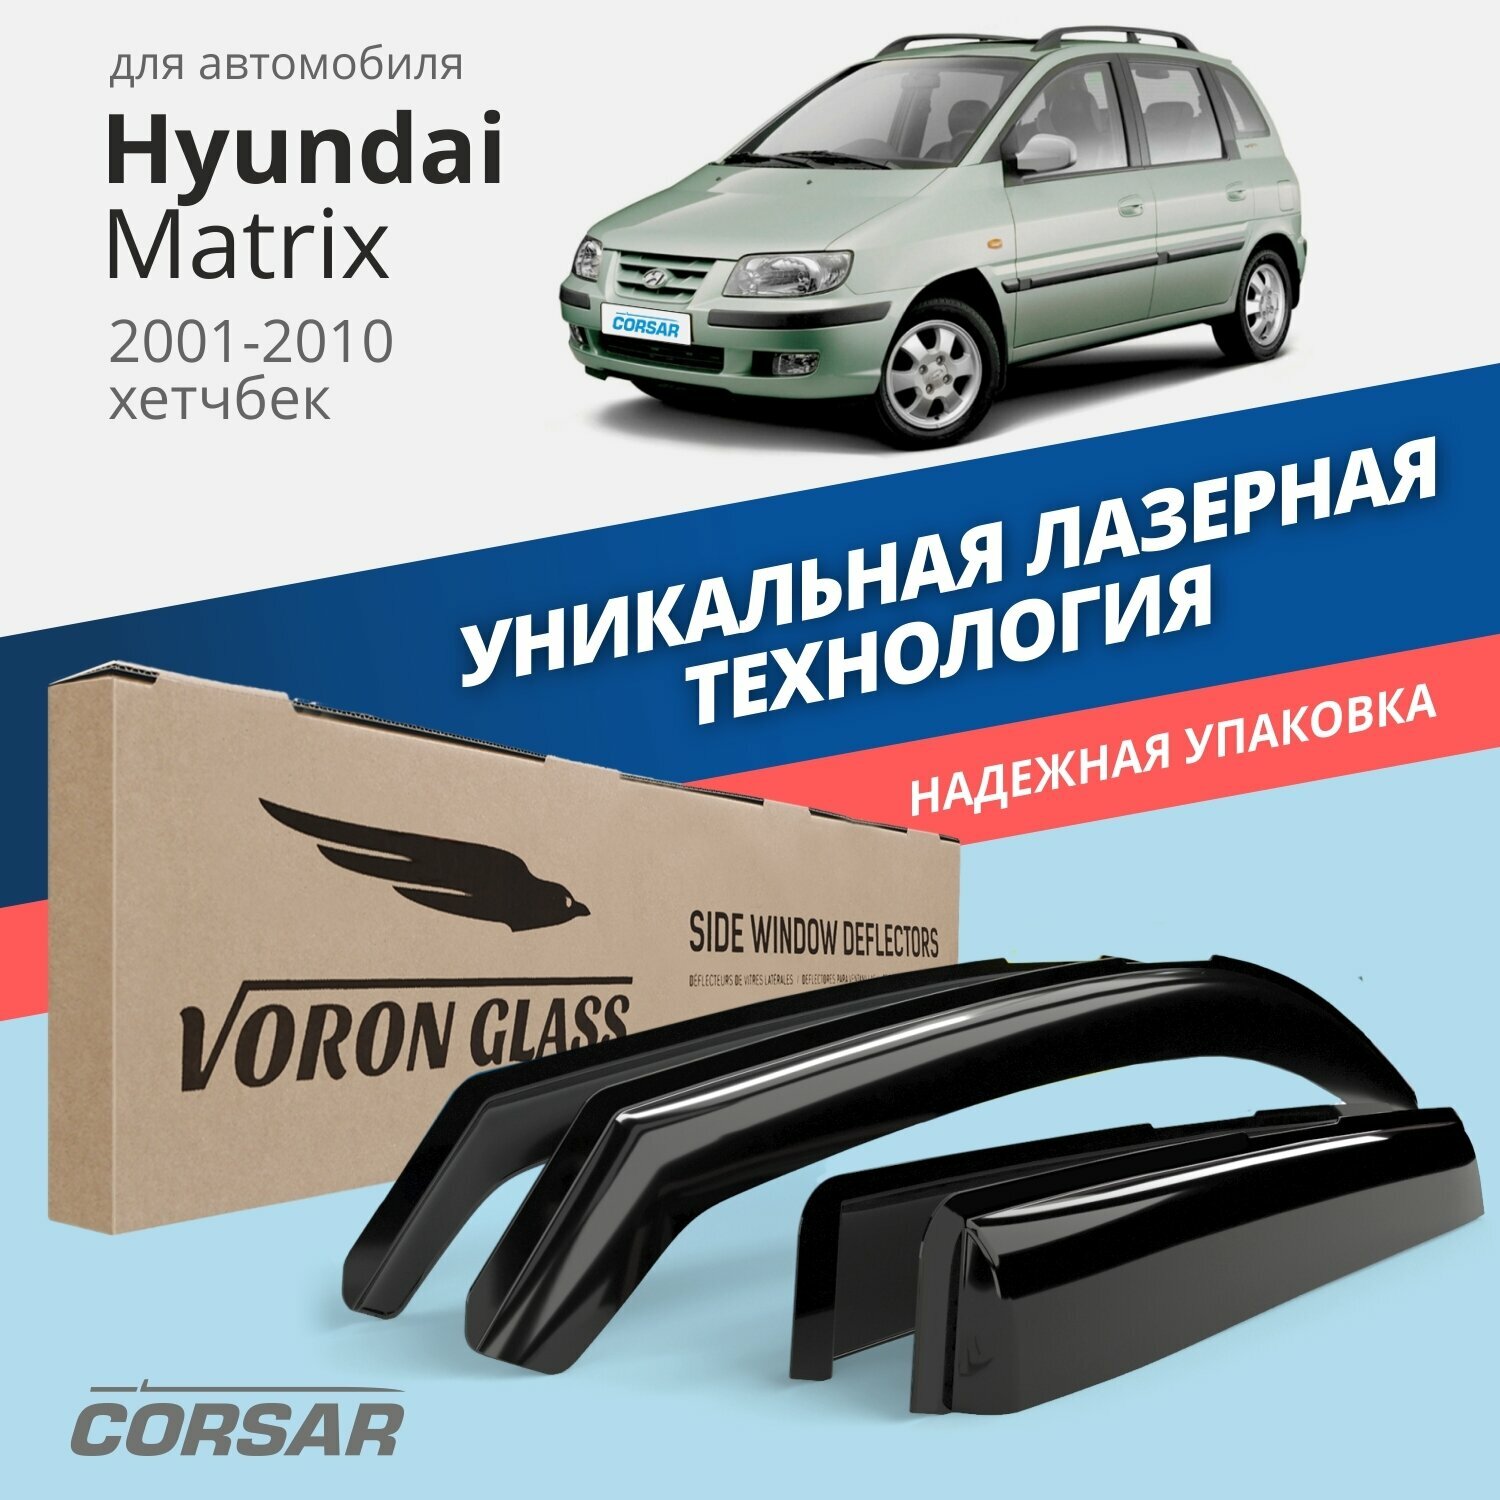 Дефлекторы окон Voron Glass серия Corsar для Hyundai Matrix 2001-2010 /хетчбек накладные 4 шт.